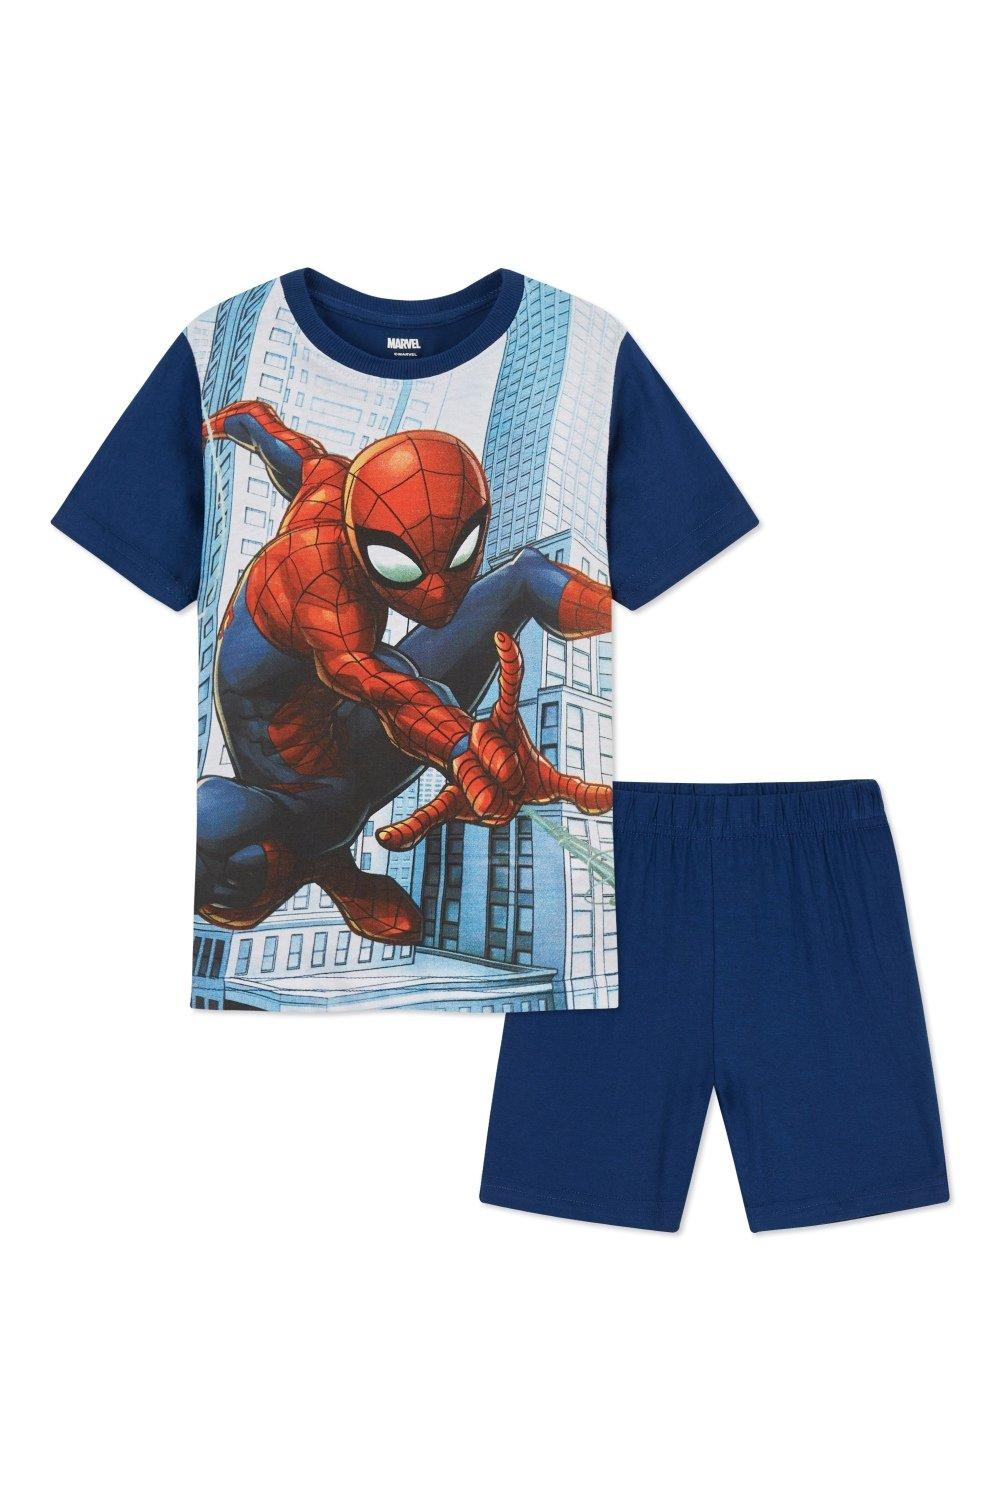 Короткий пижамный комплект «Человек-паук» Marvel, мультиколор